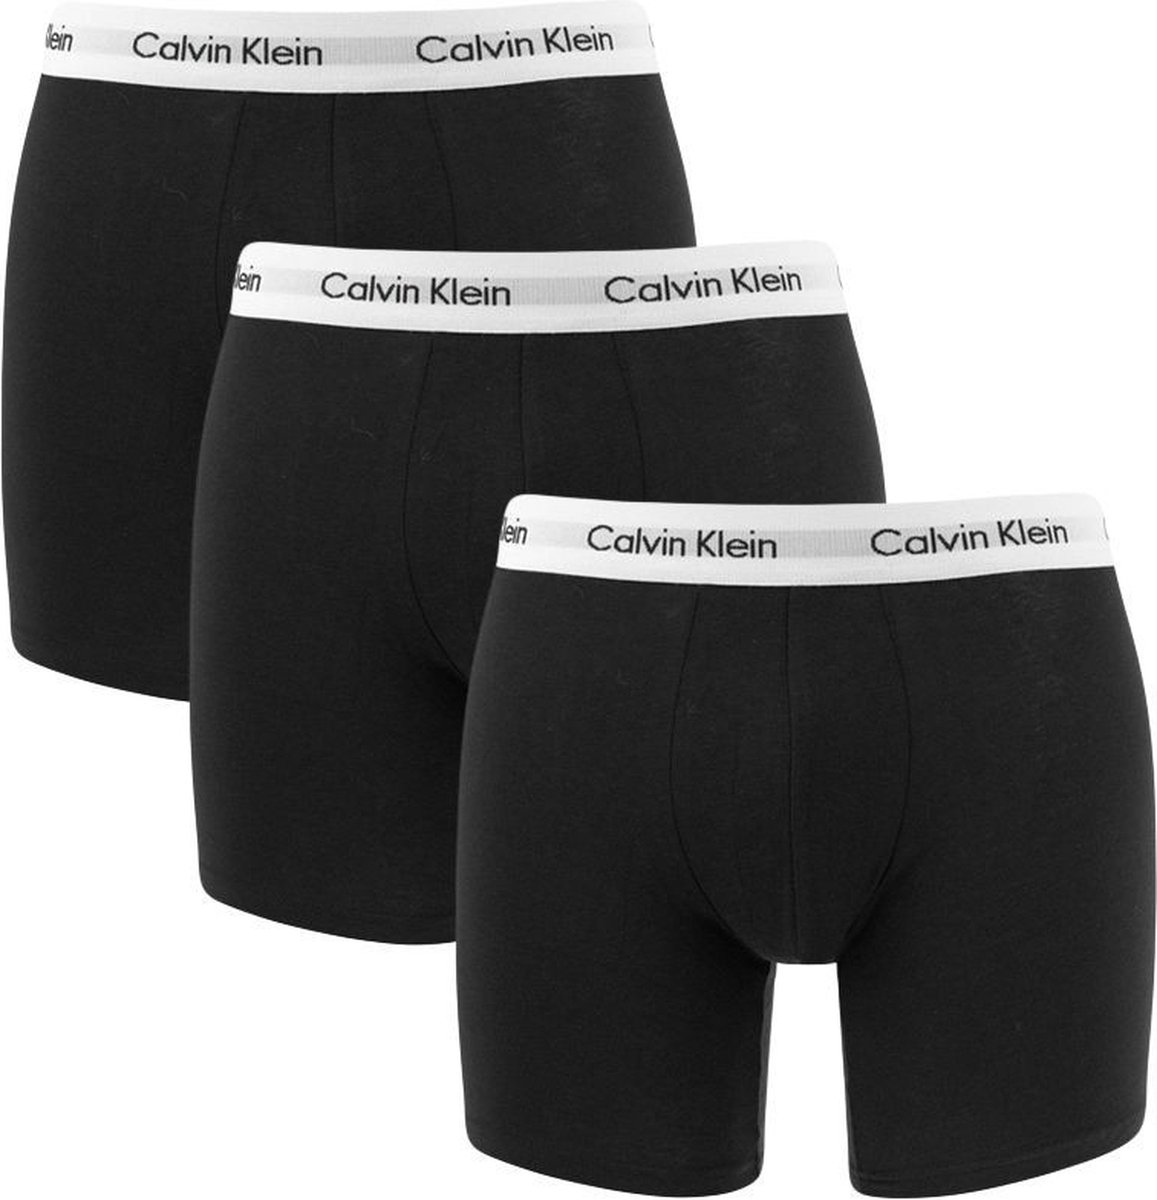 Ultieme Consulaat wetgeving Calvin Klein Boxershorts 3-pack zwart-wit maat S | bol.com